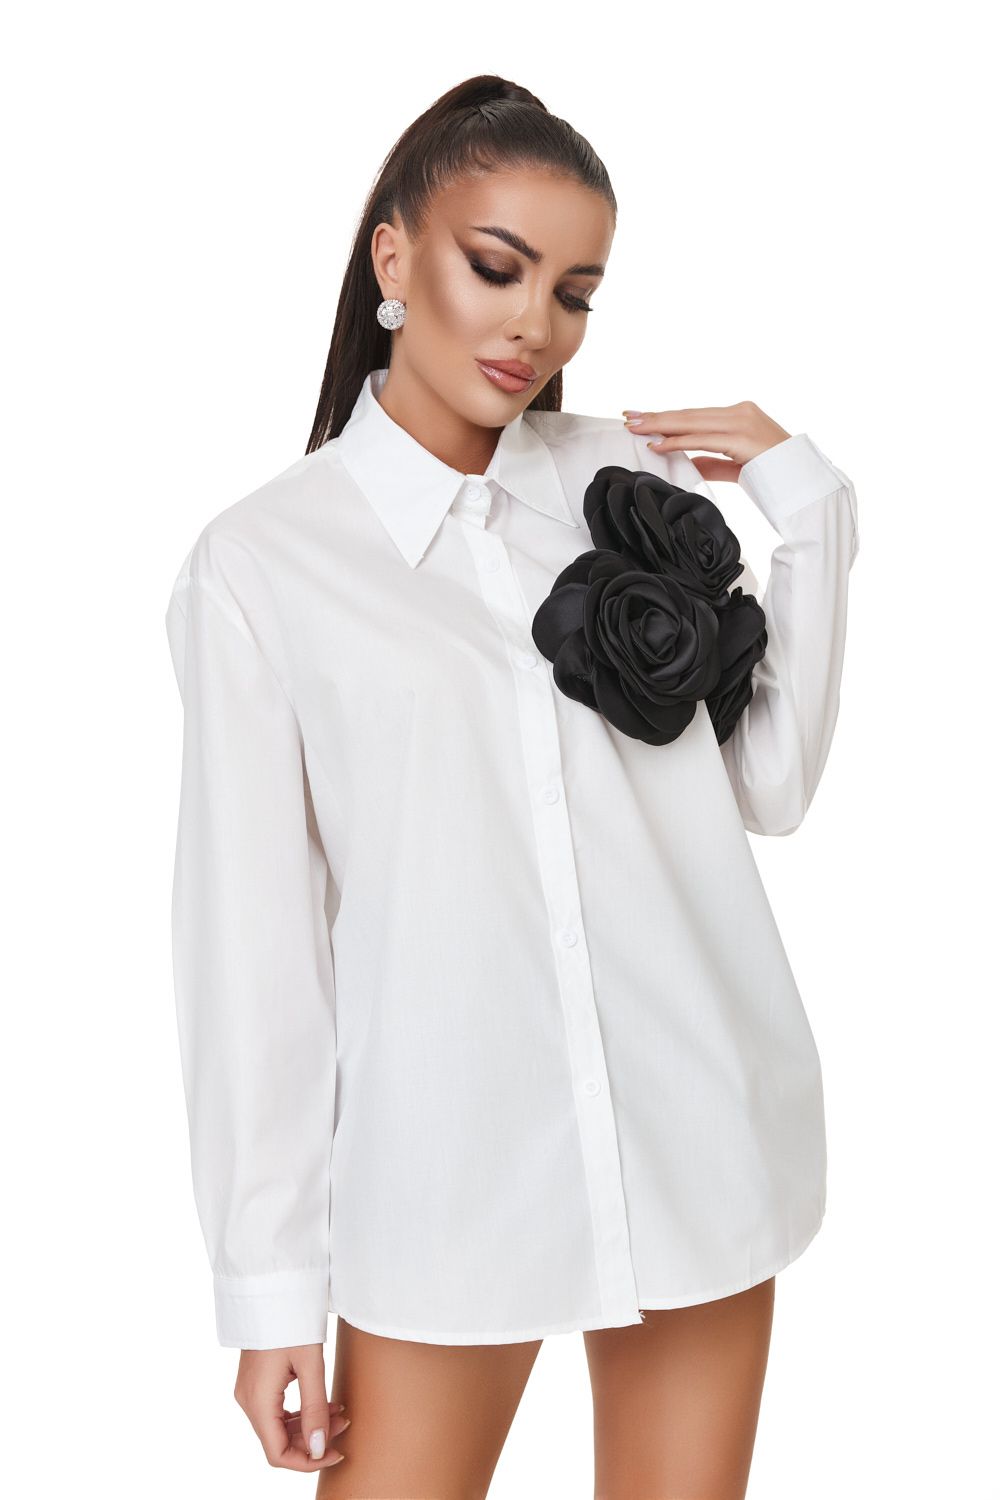 Ladies elegant white shirt Miresy Bogas